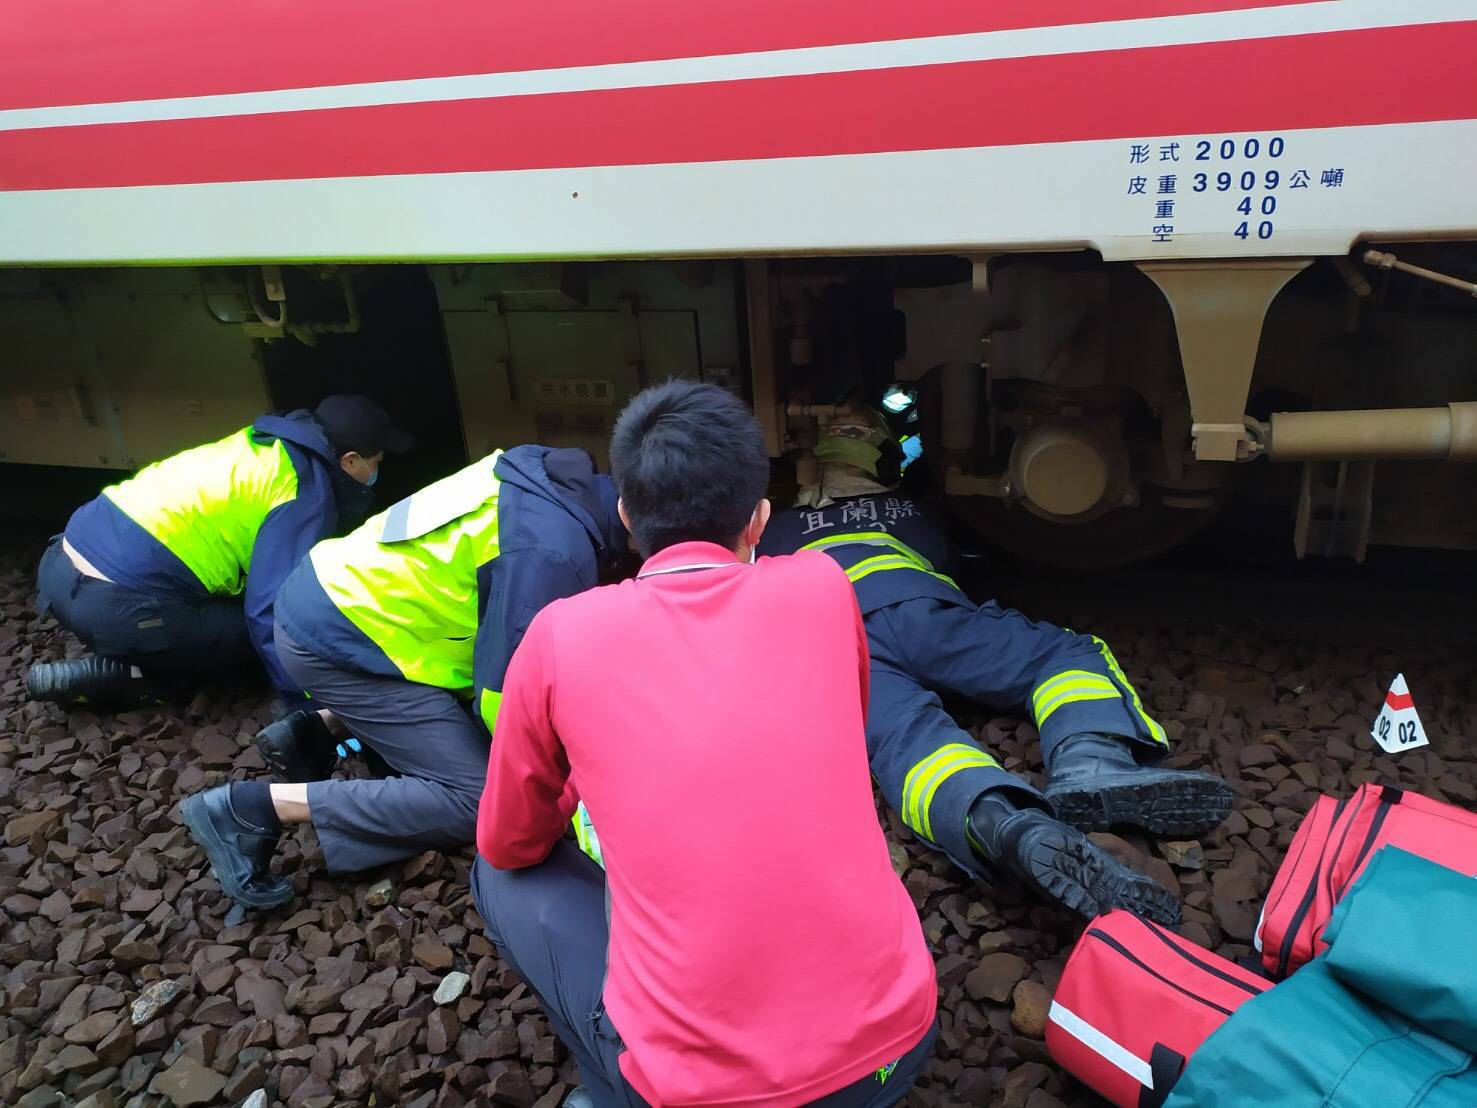 普悠瑪列車傳意外事故